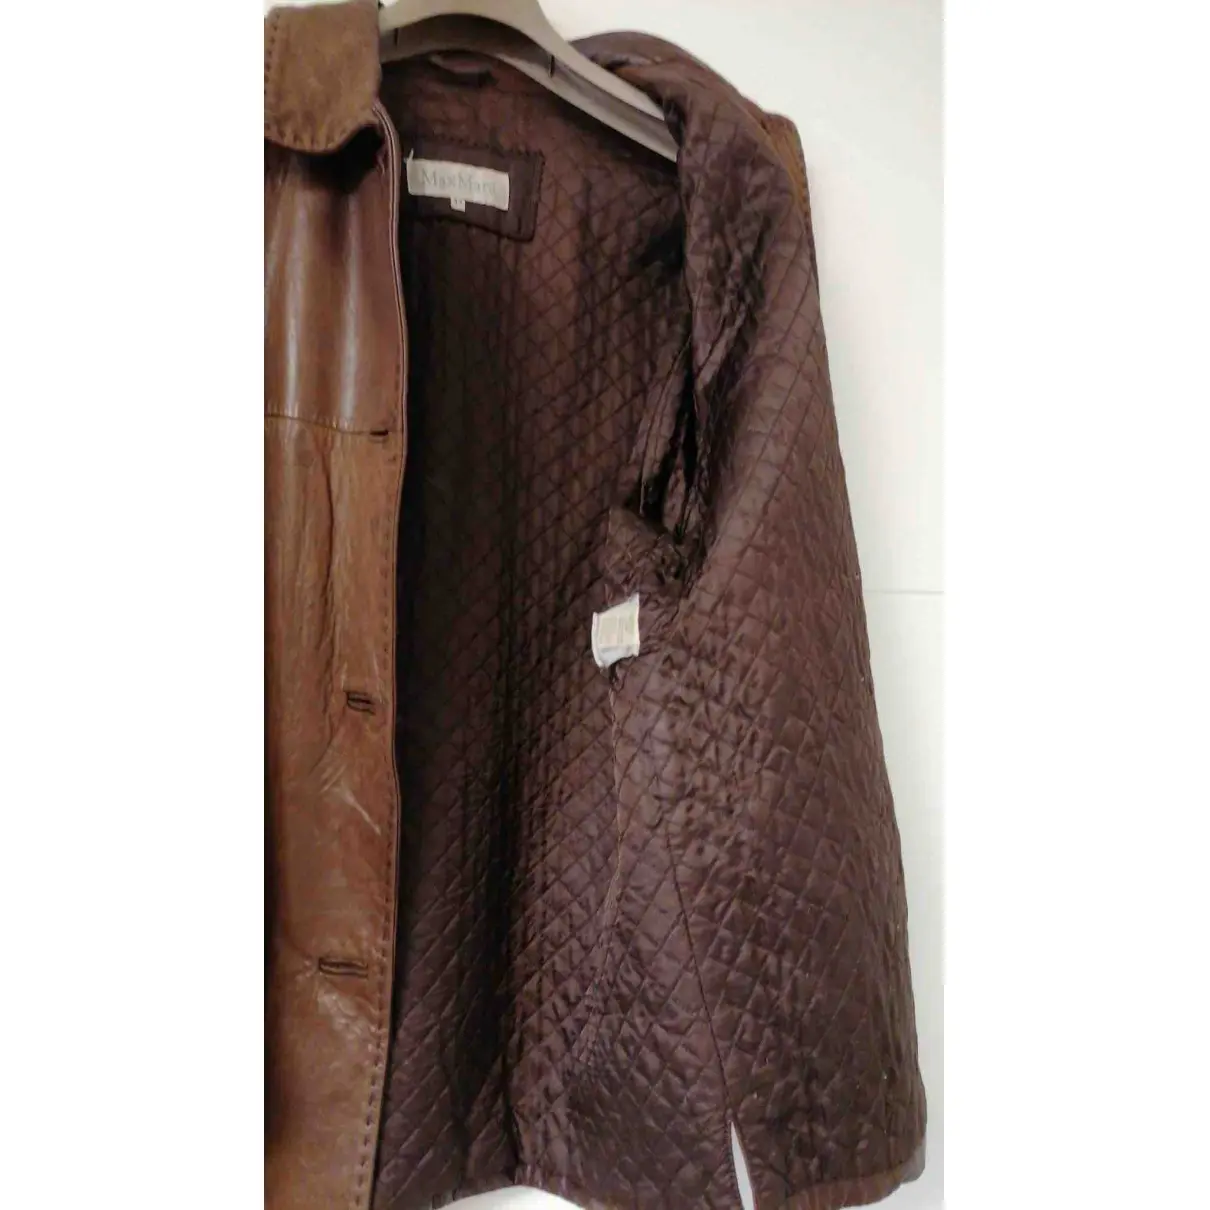 Leather jacket Max Mara - Vintage